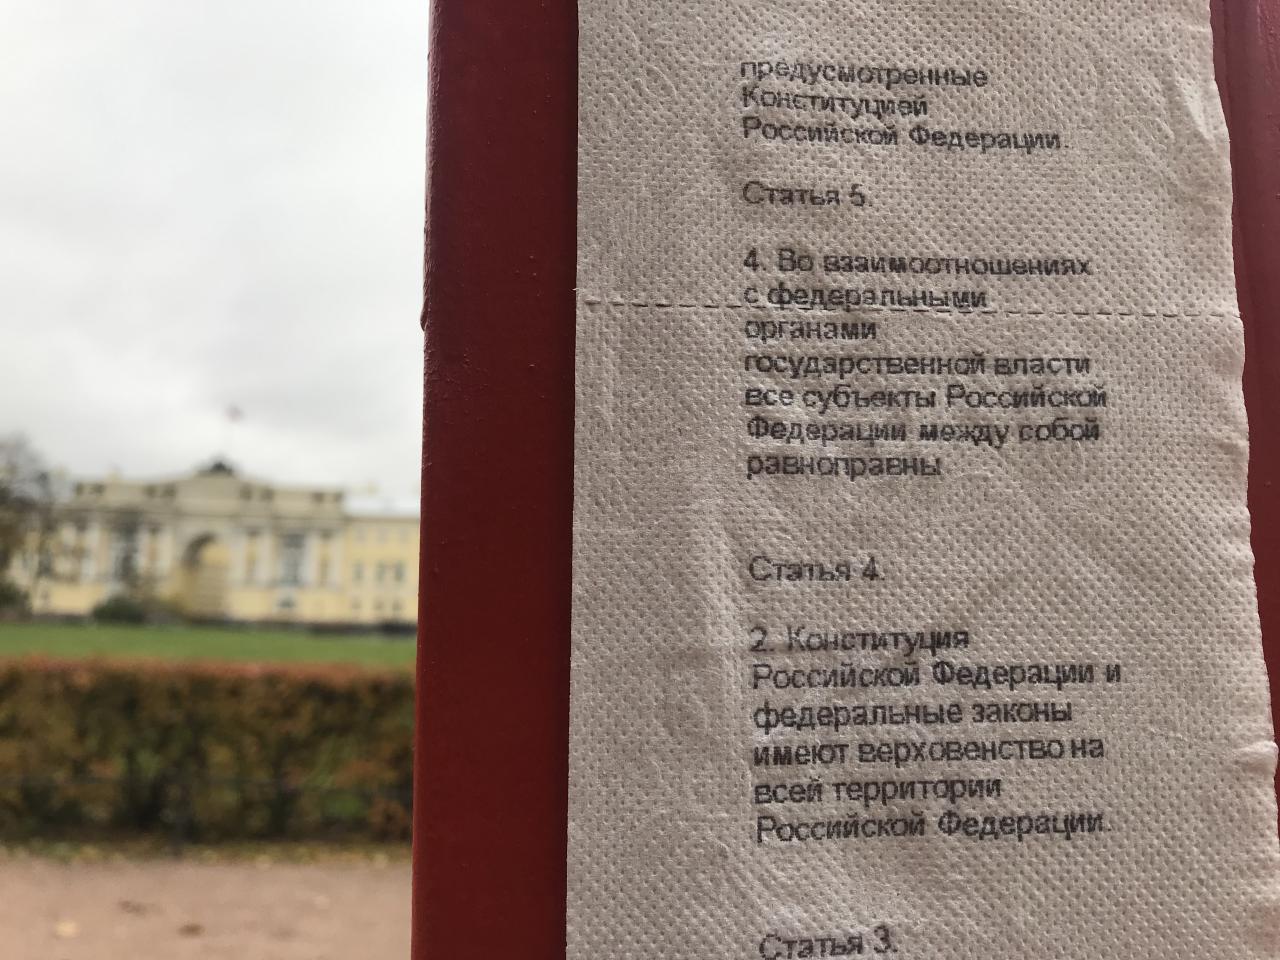 Интересный арт-объект был установлен рядом с конституционным судом в Санкт-Петербурге